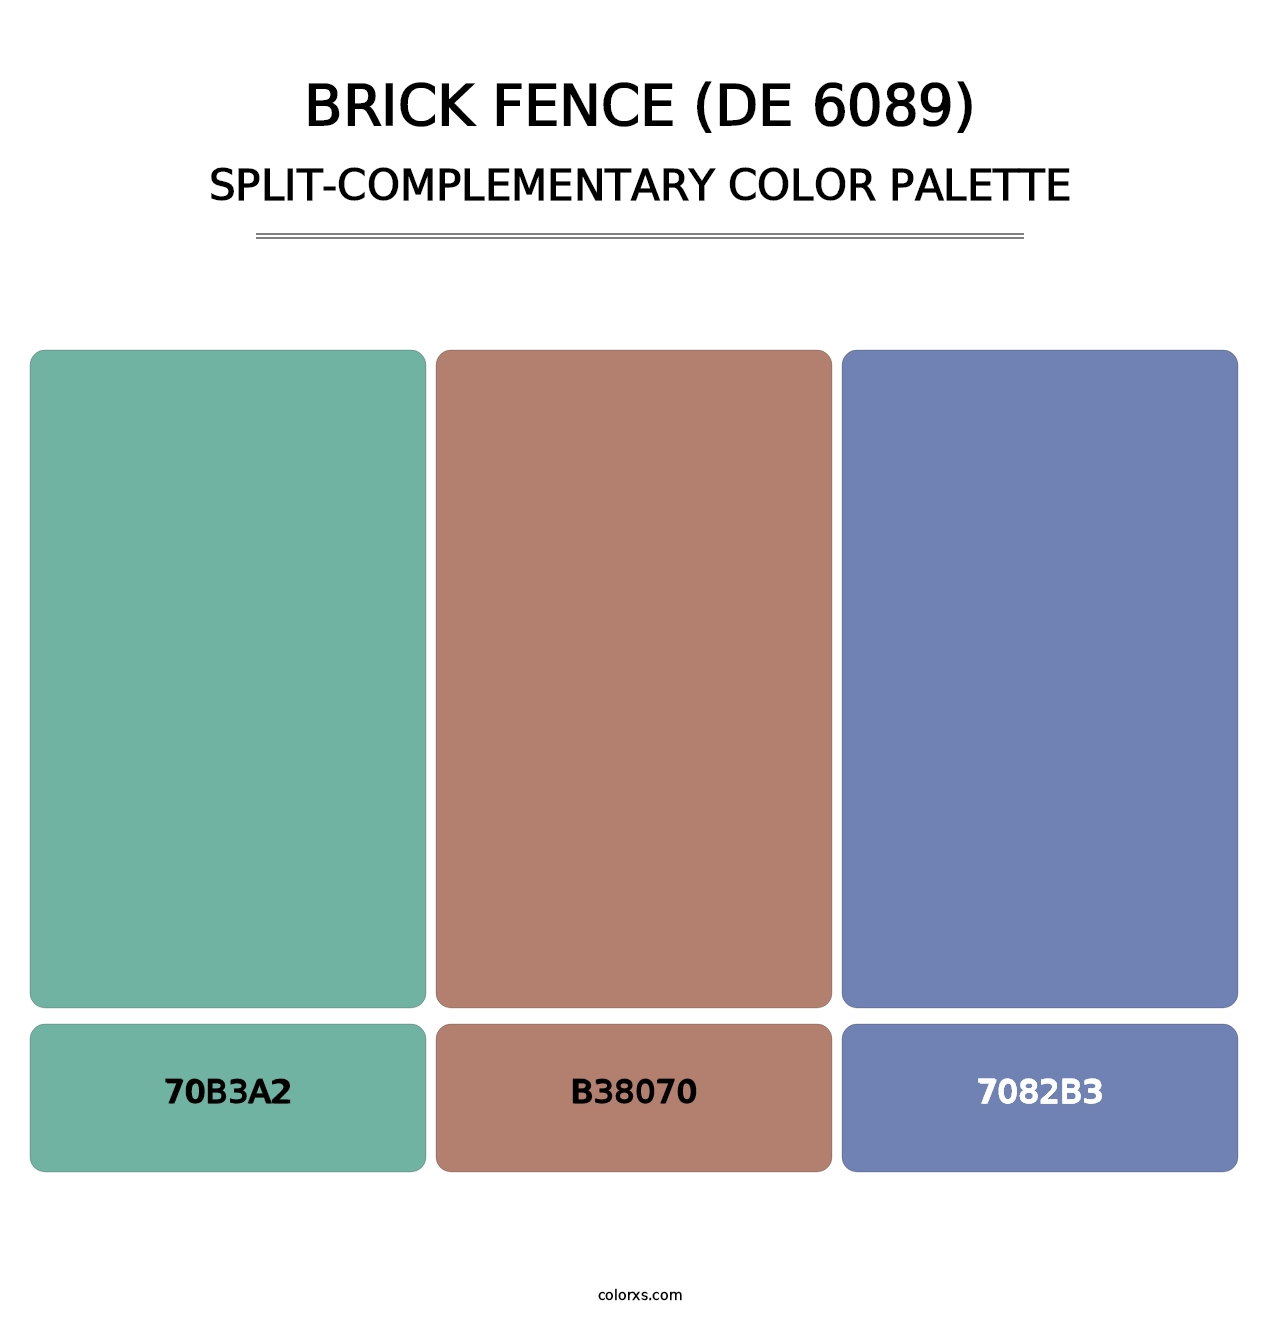 Brick Fence (DE 6089) - Split-Complementary Color Palette